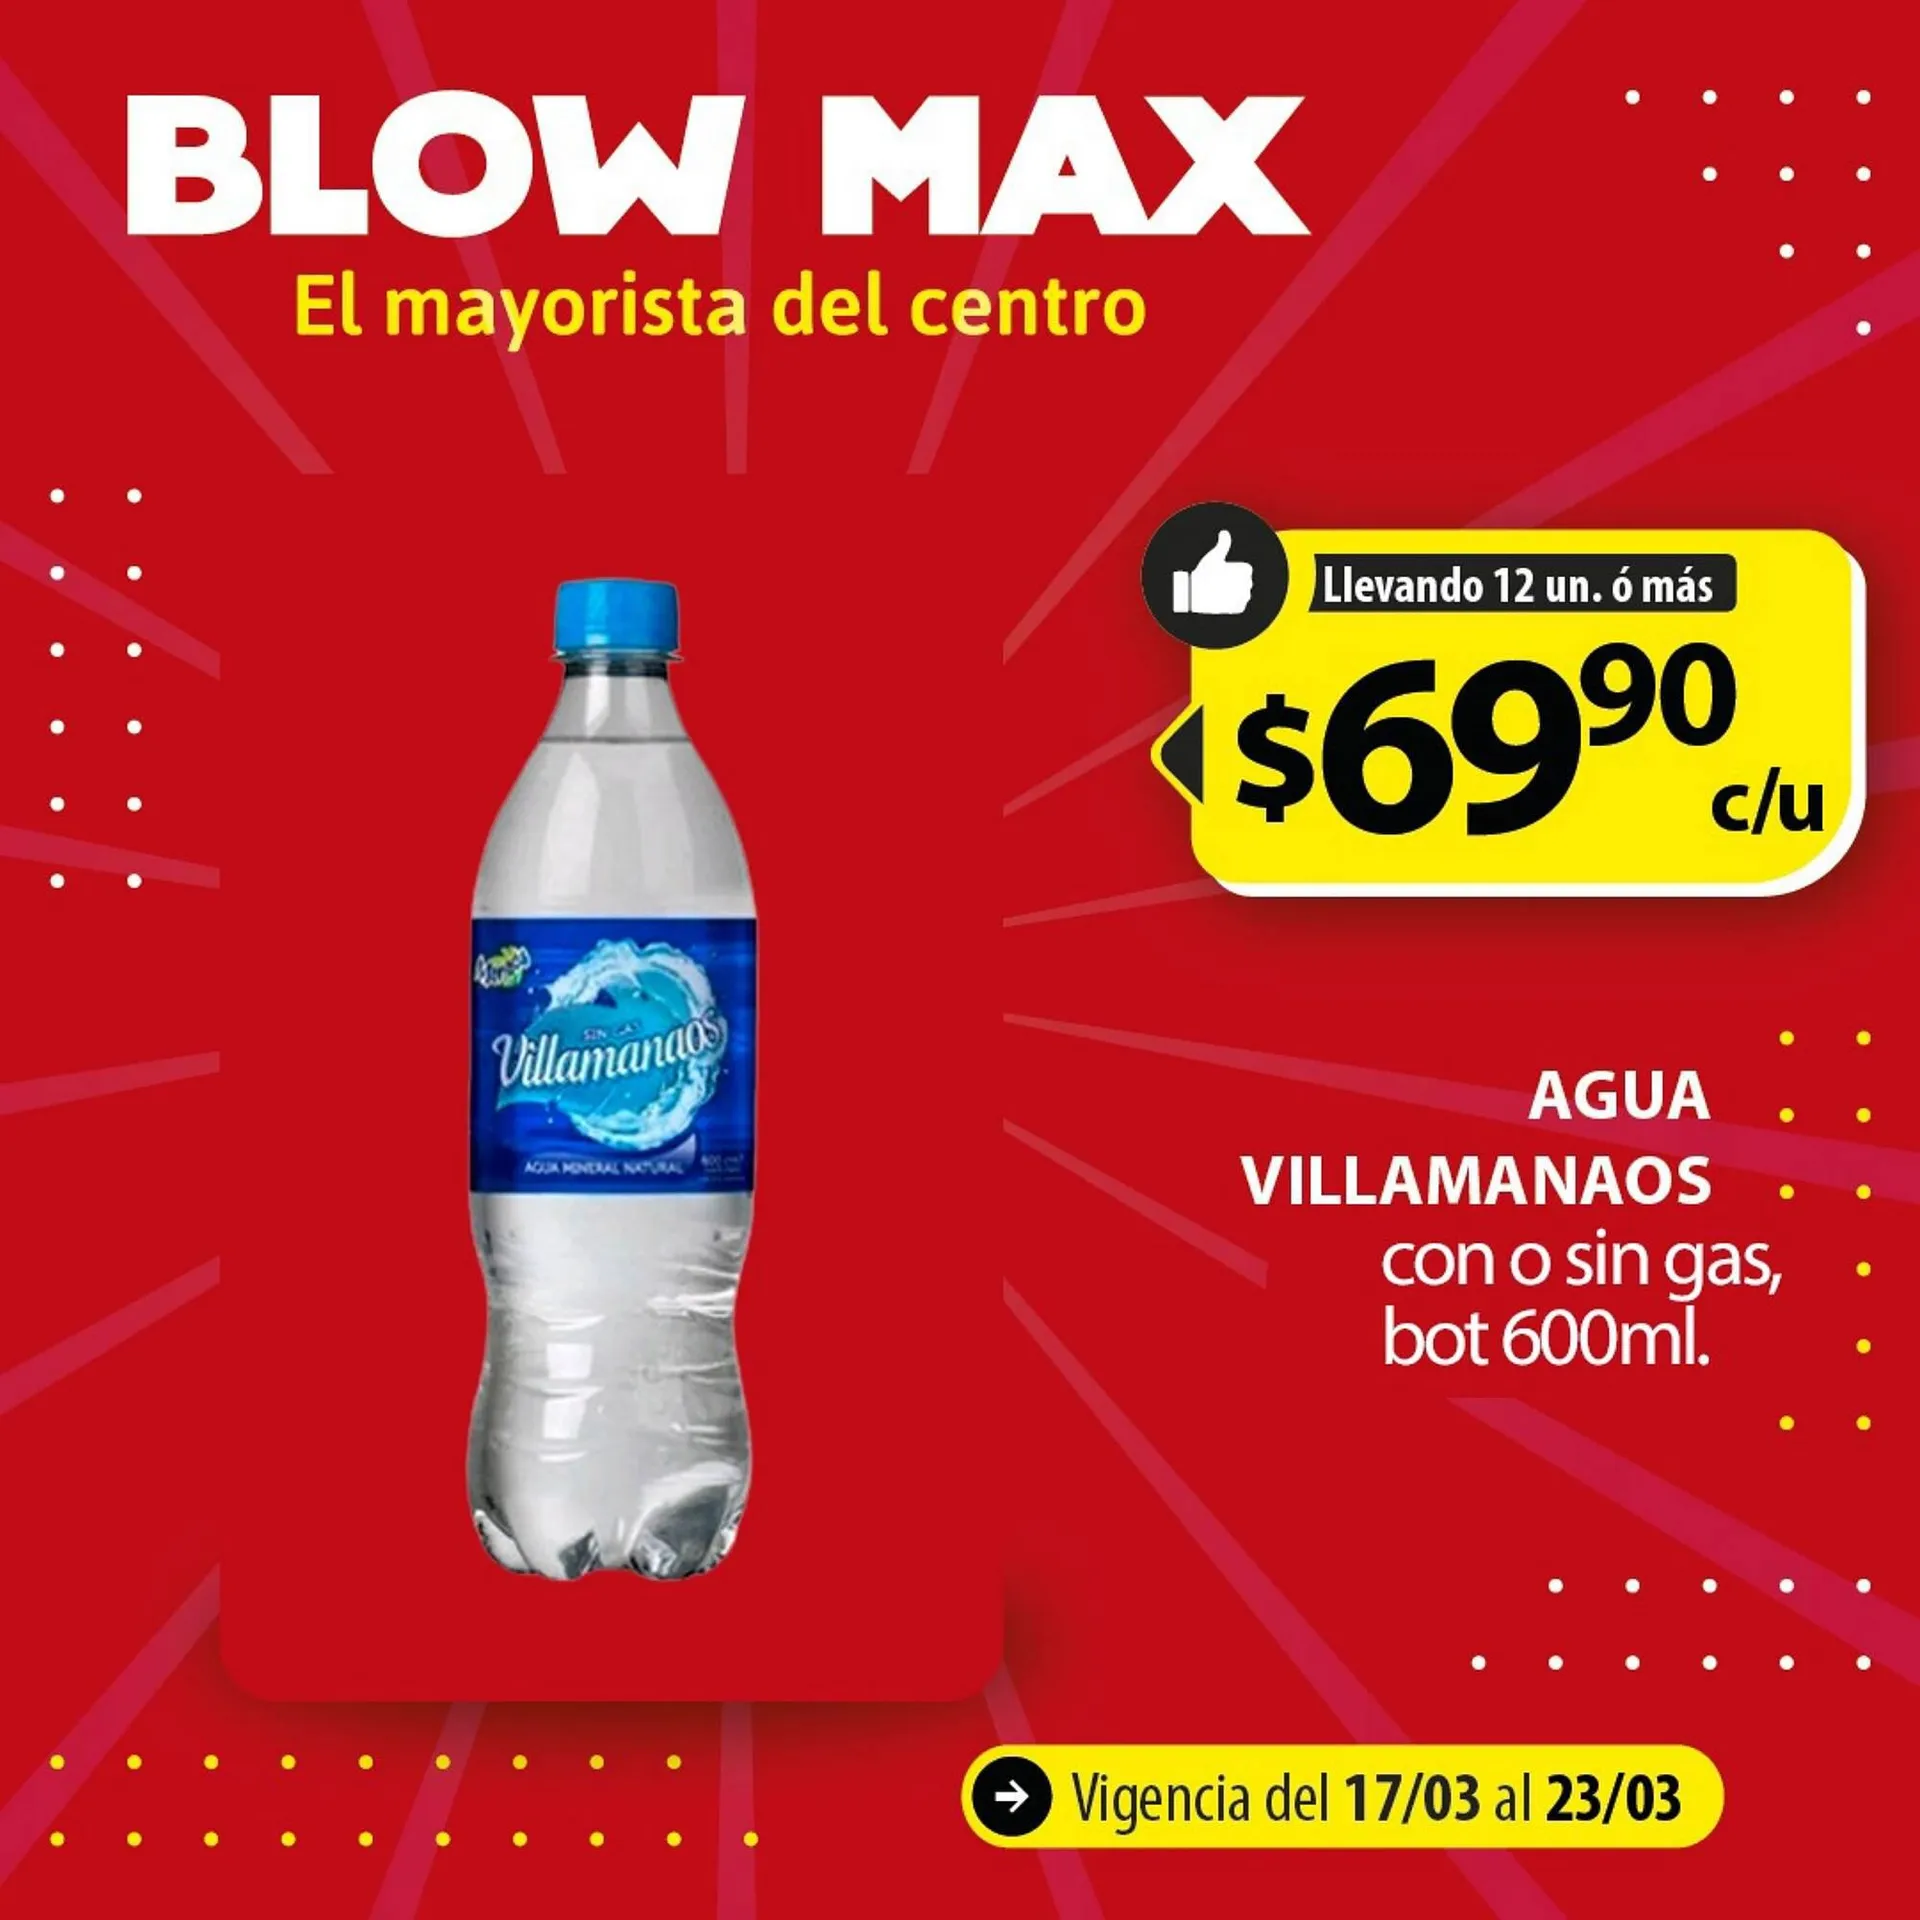 Catálogo Blow Max - 9